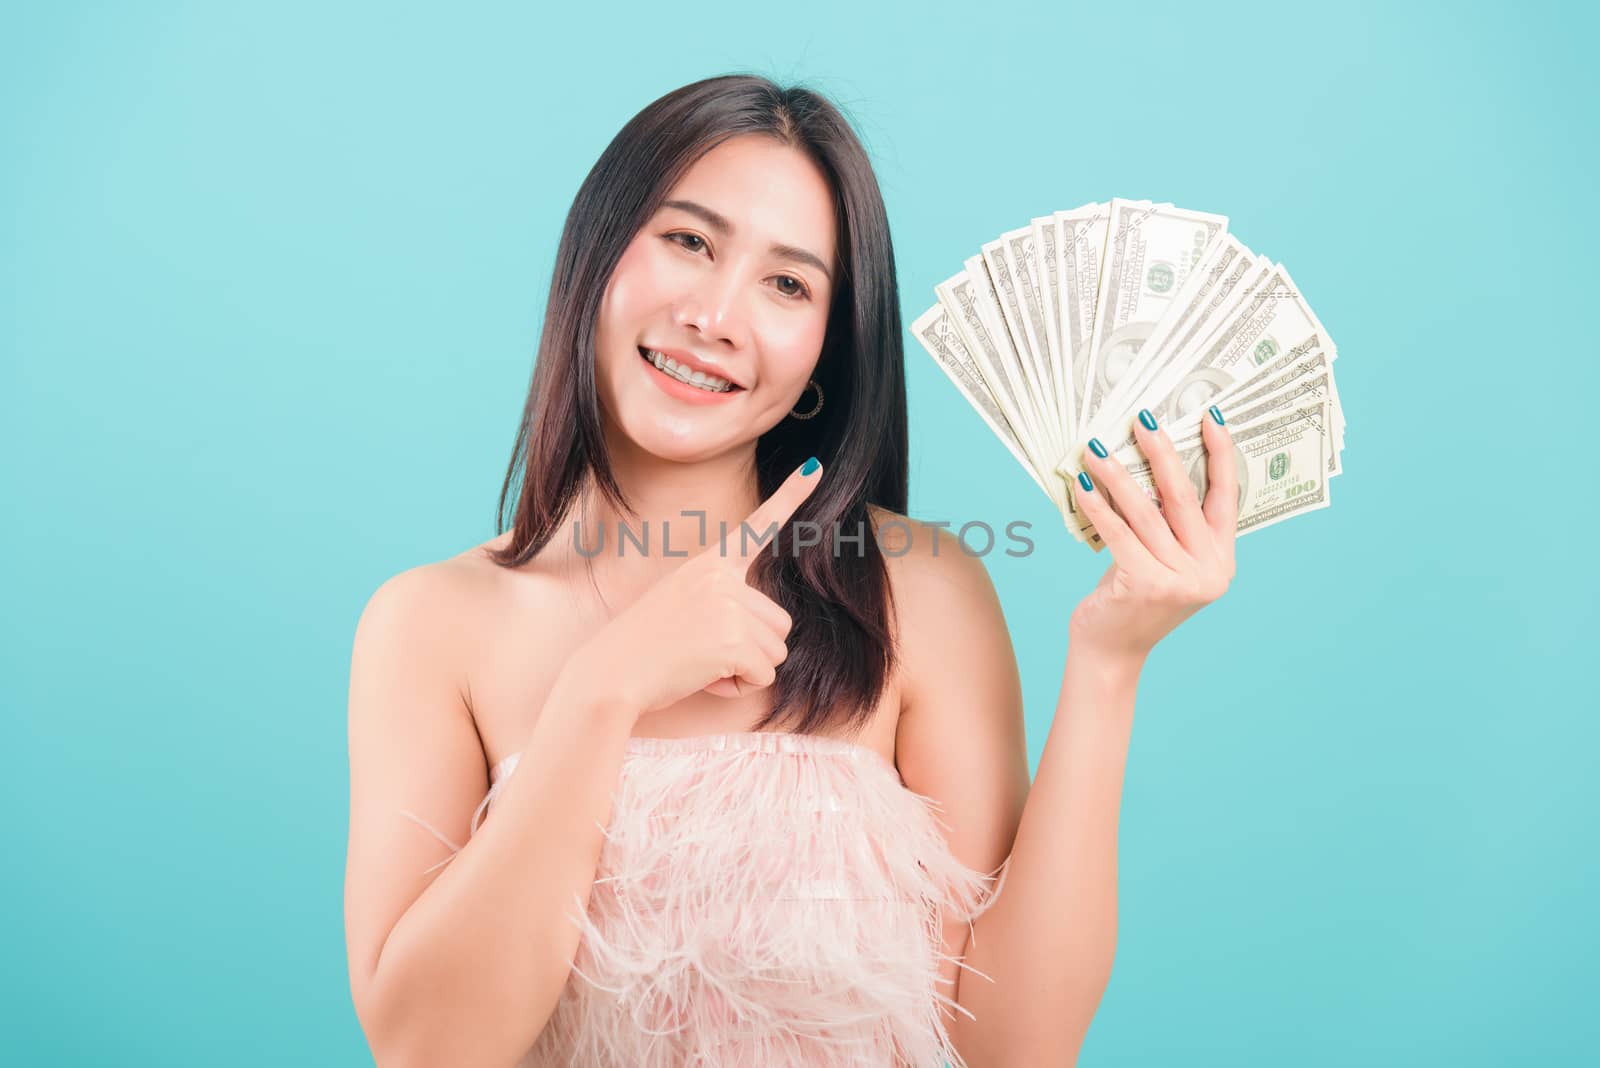 woman standing smile her celebrating holding dollar money fan ba by Sorapop